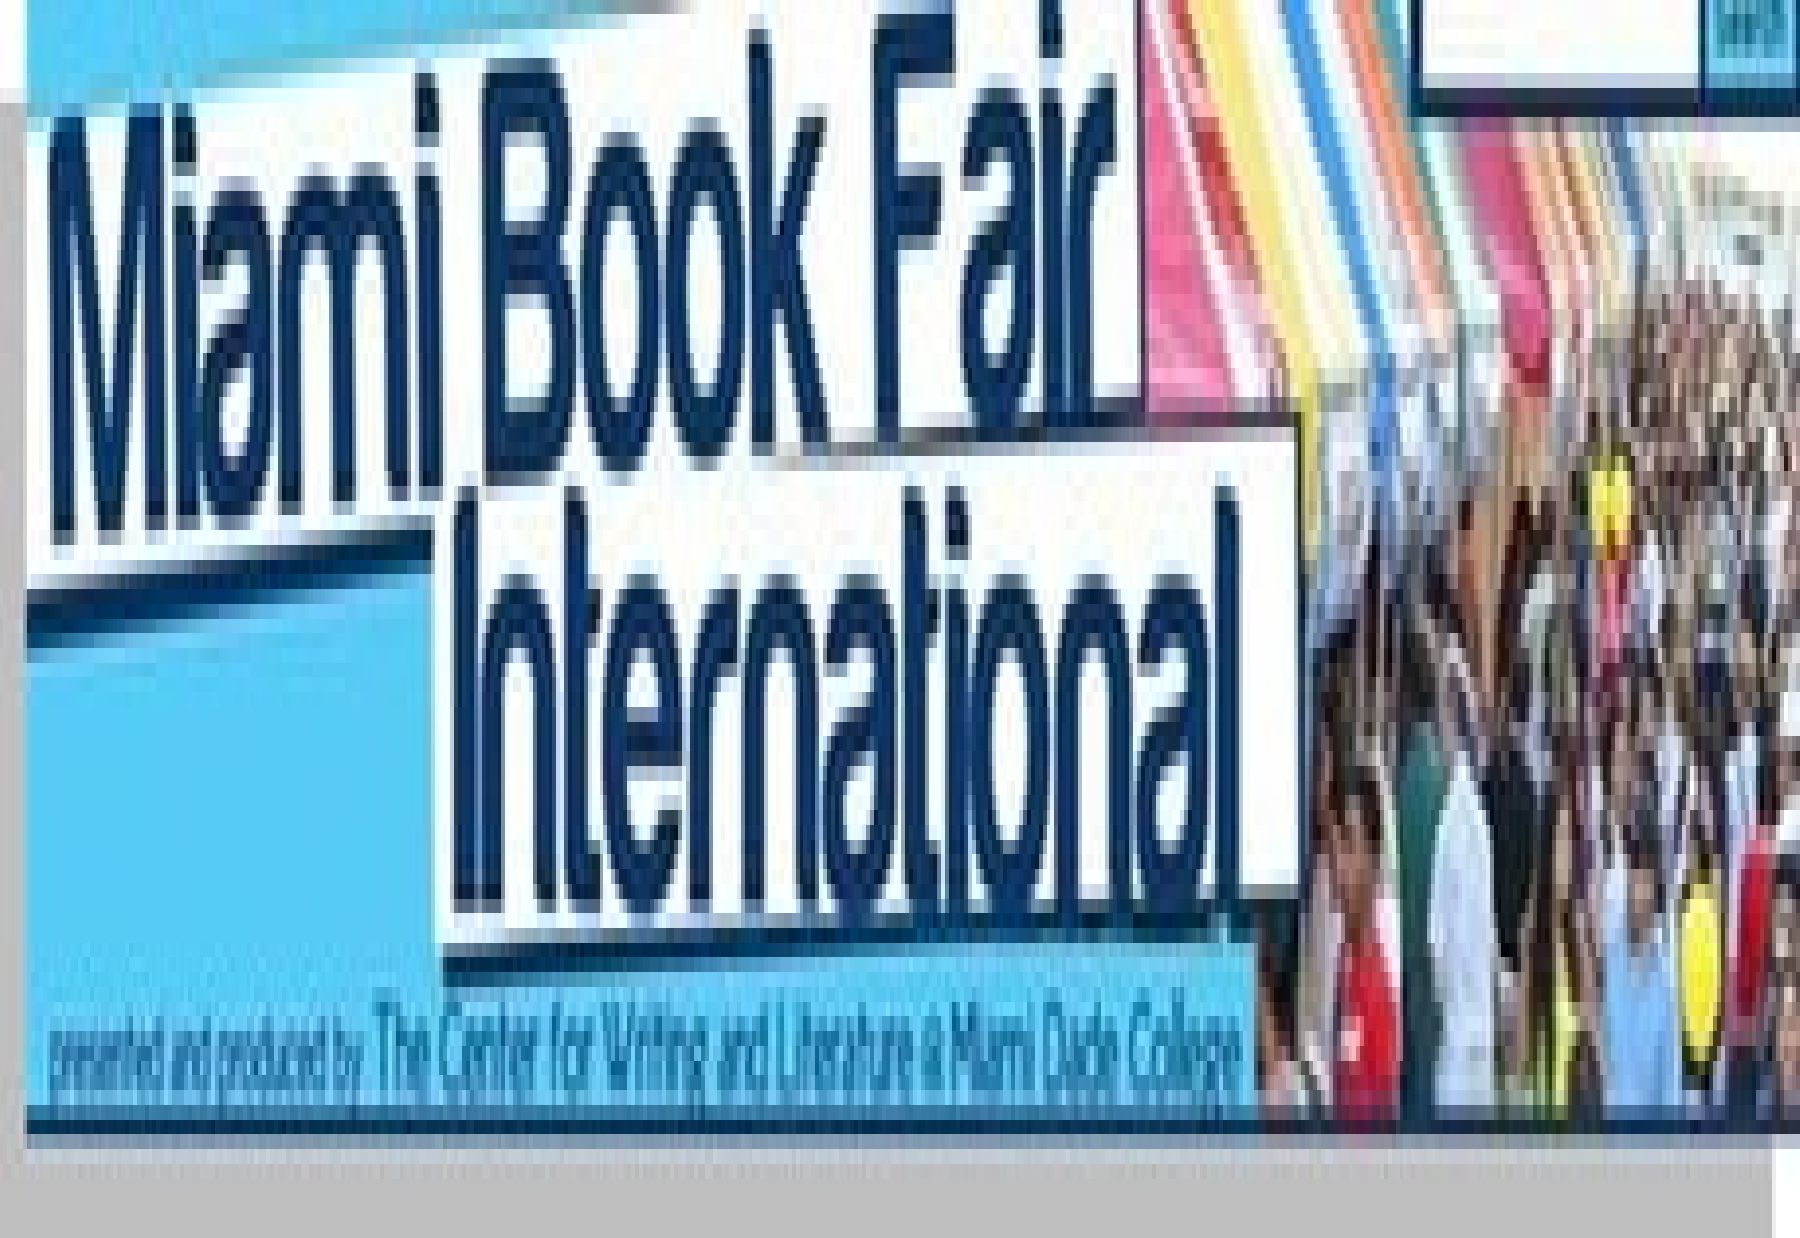 Miami Book Fair International